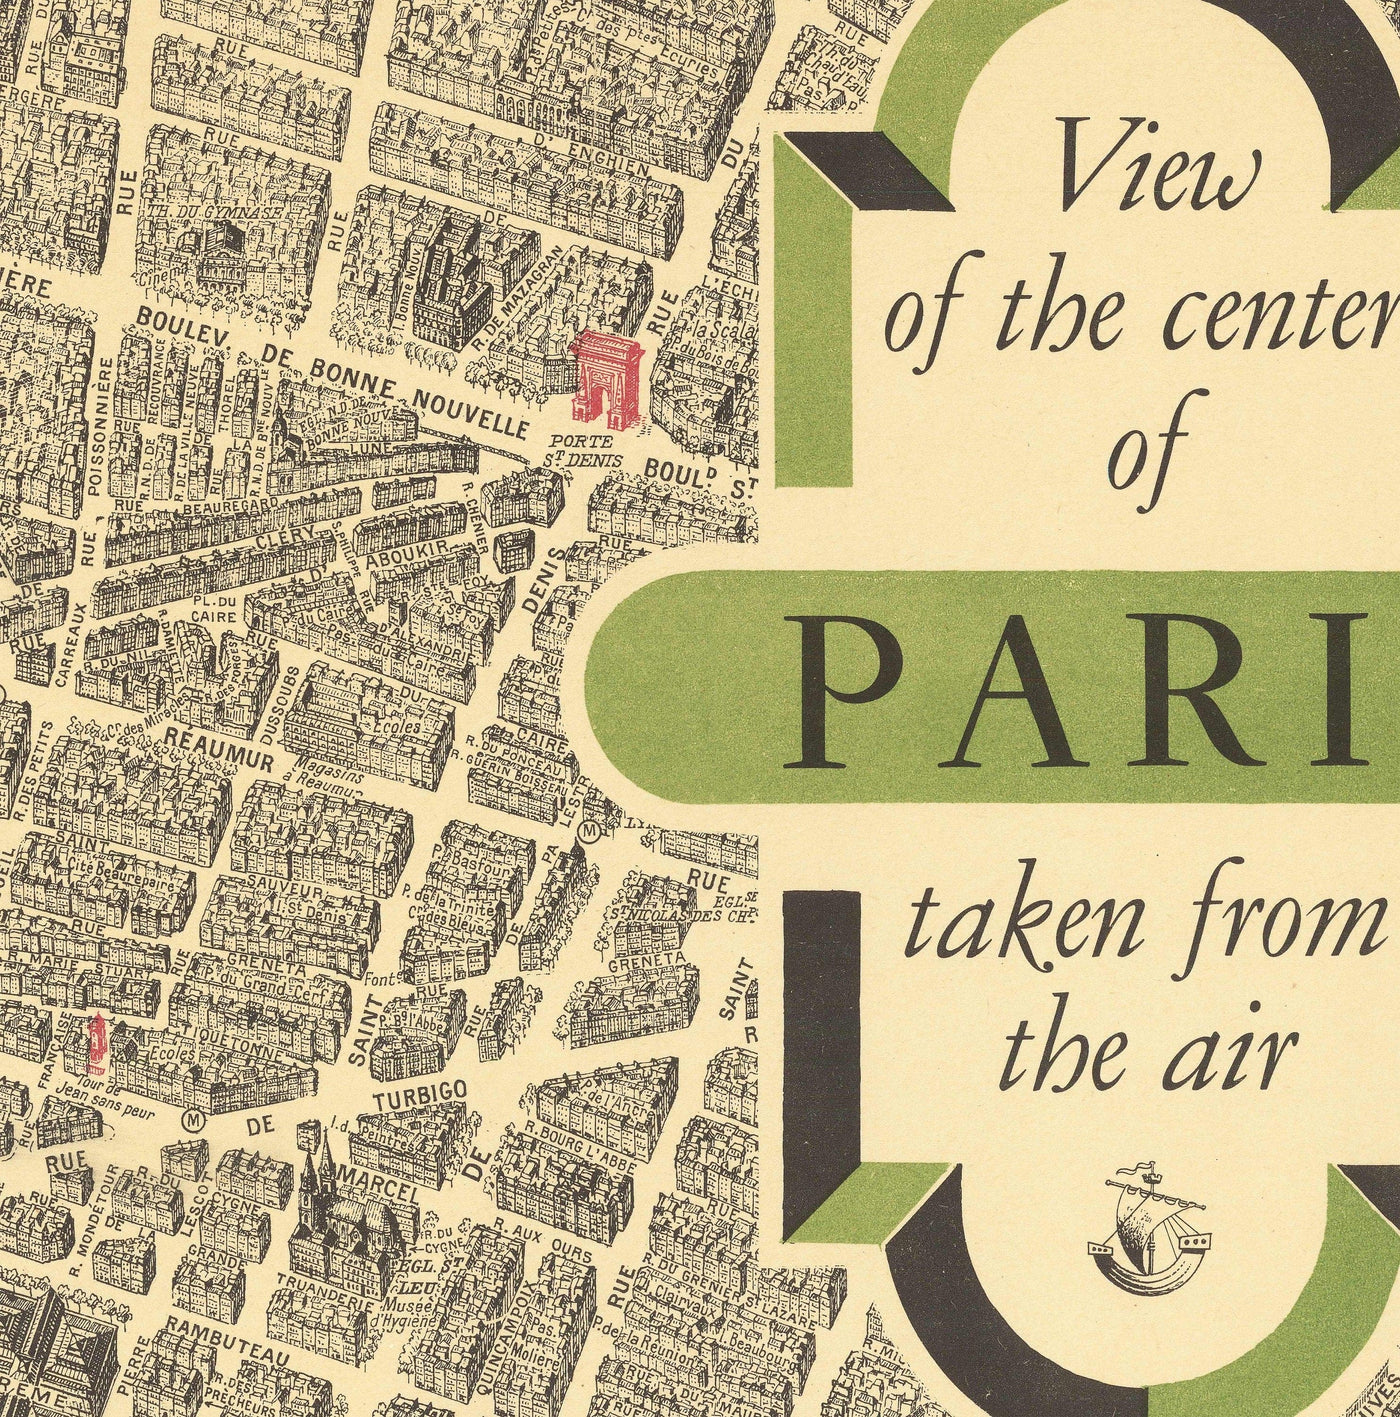 Mapa antiguo raro de París, Francia de Georges Peltier, 1950 - Louvre, Notre Dame, Sainte-Chapelle, Torre Eiffel